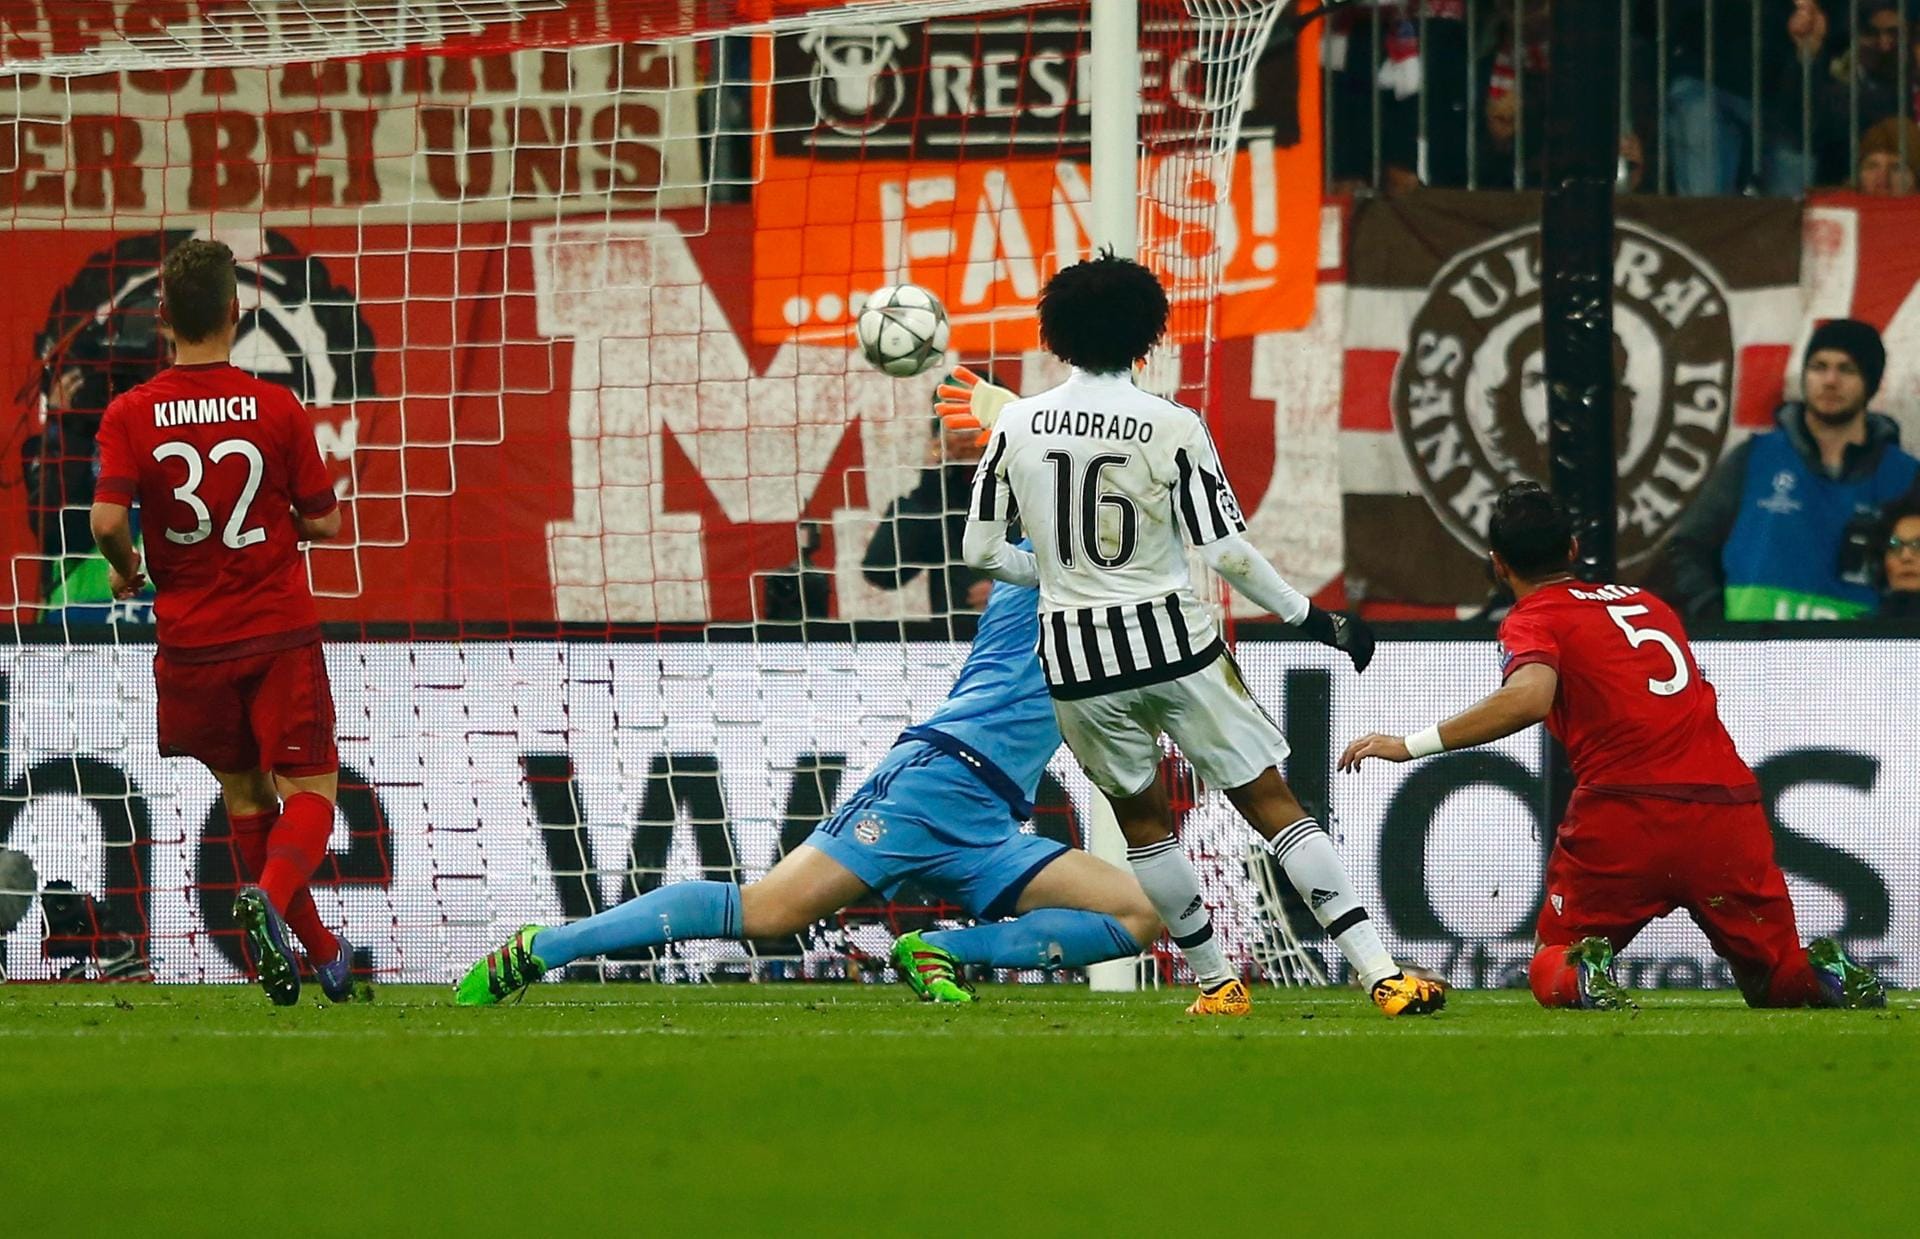 Die Folge: In der 28. Minute legt Juve sogar noch nach und schockt den FC Bayern mit dem 2:0! Nach tollem Solo legt Morata auf Cuadrado quer, und der versenkt die Kugel.